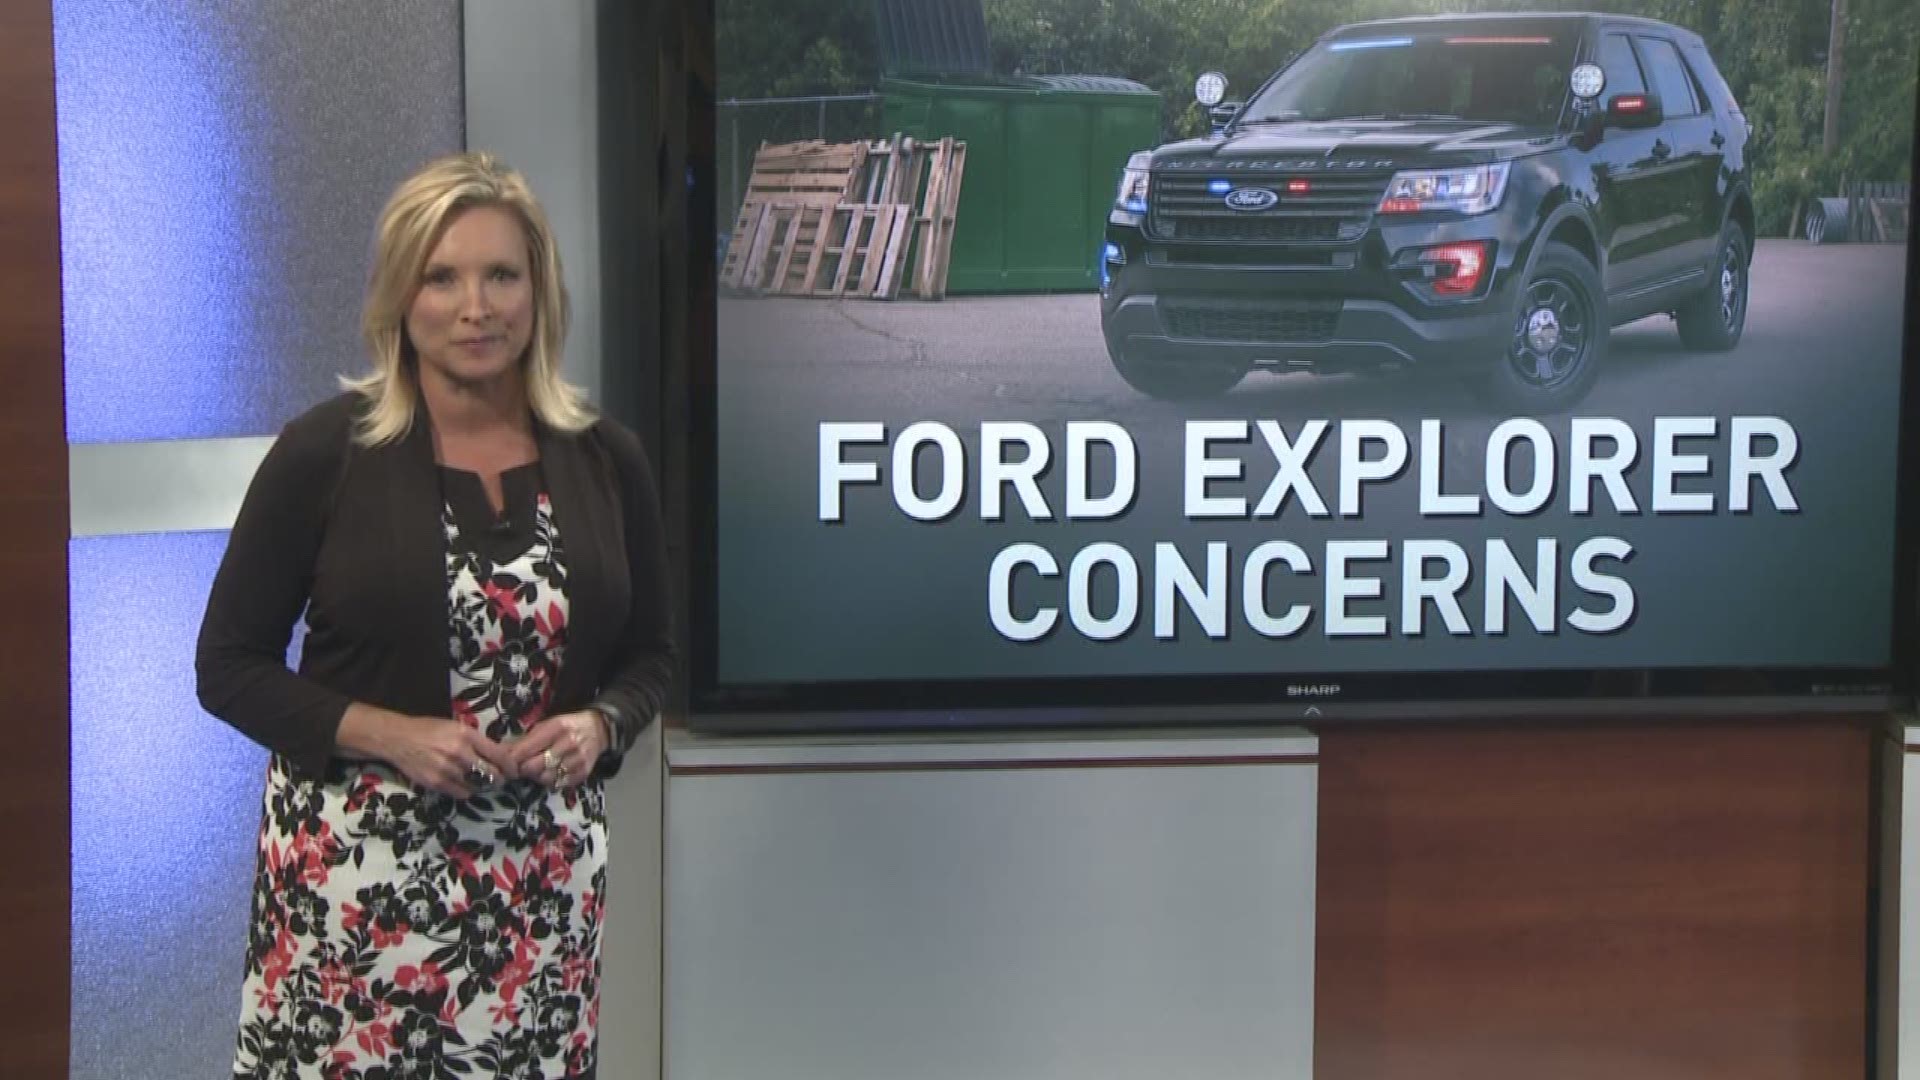 Ford Explorer concerns